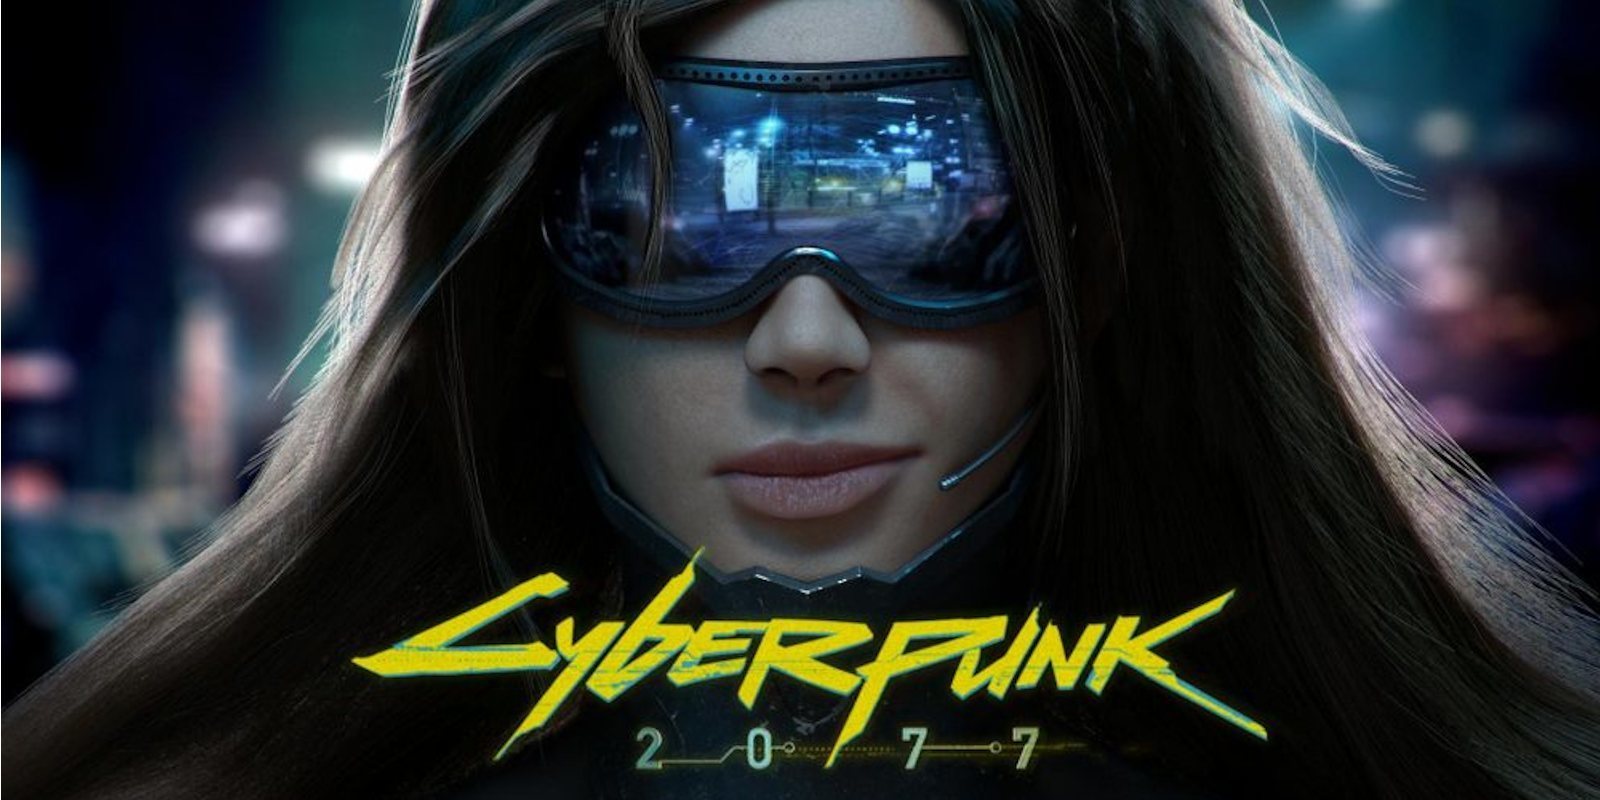 Se presenta el anuncio comercial de 'Cyberpunk 2077' con Keanu Reeves como protagonista